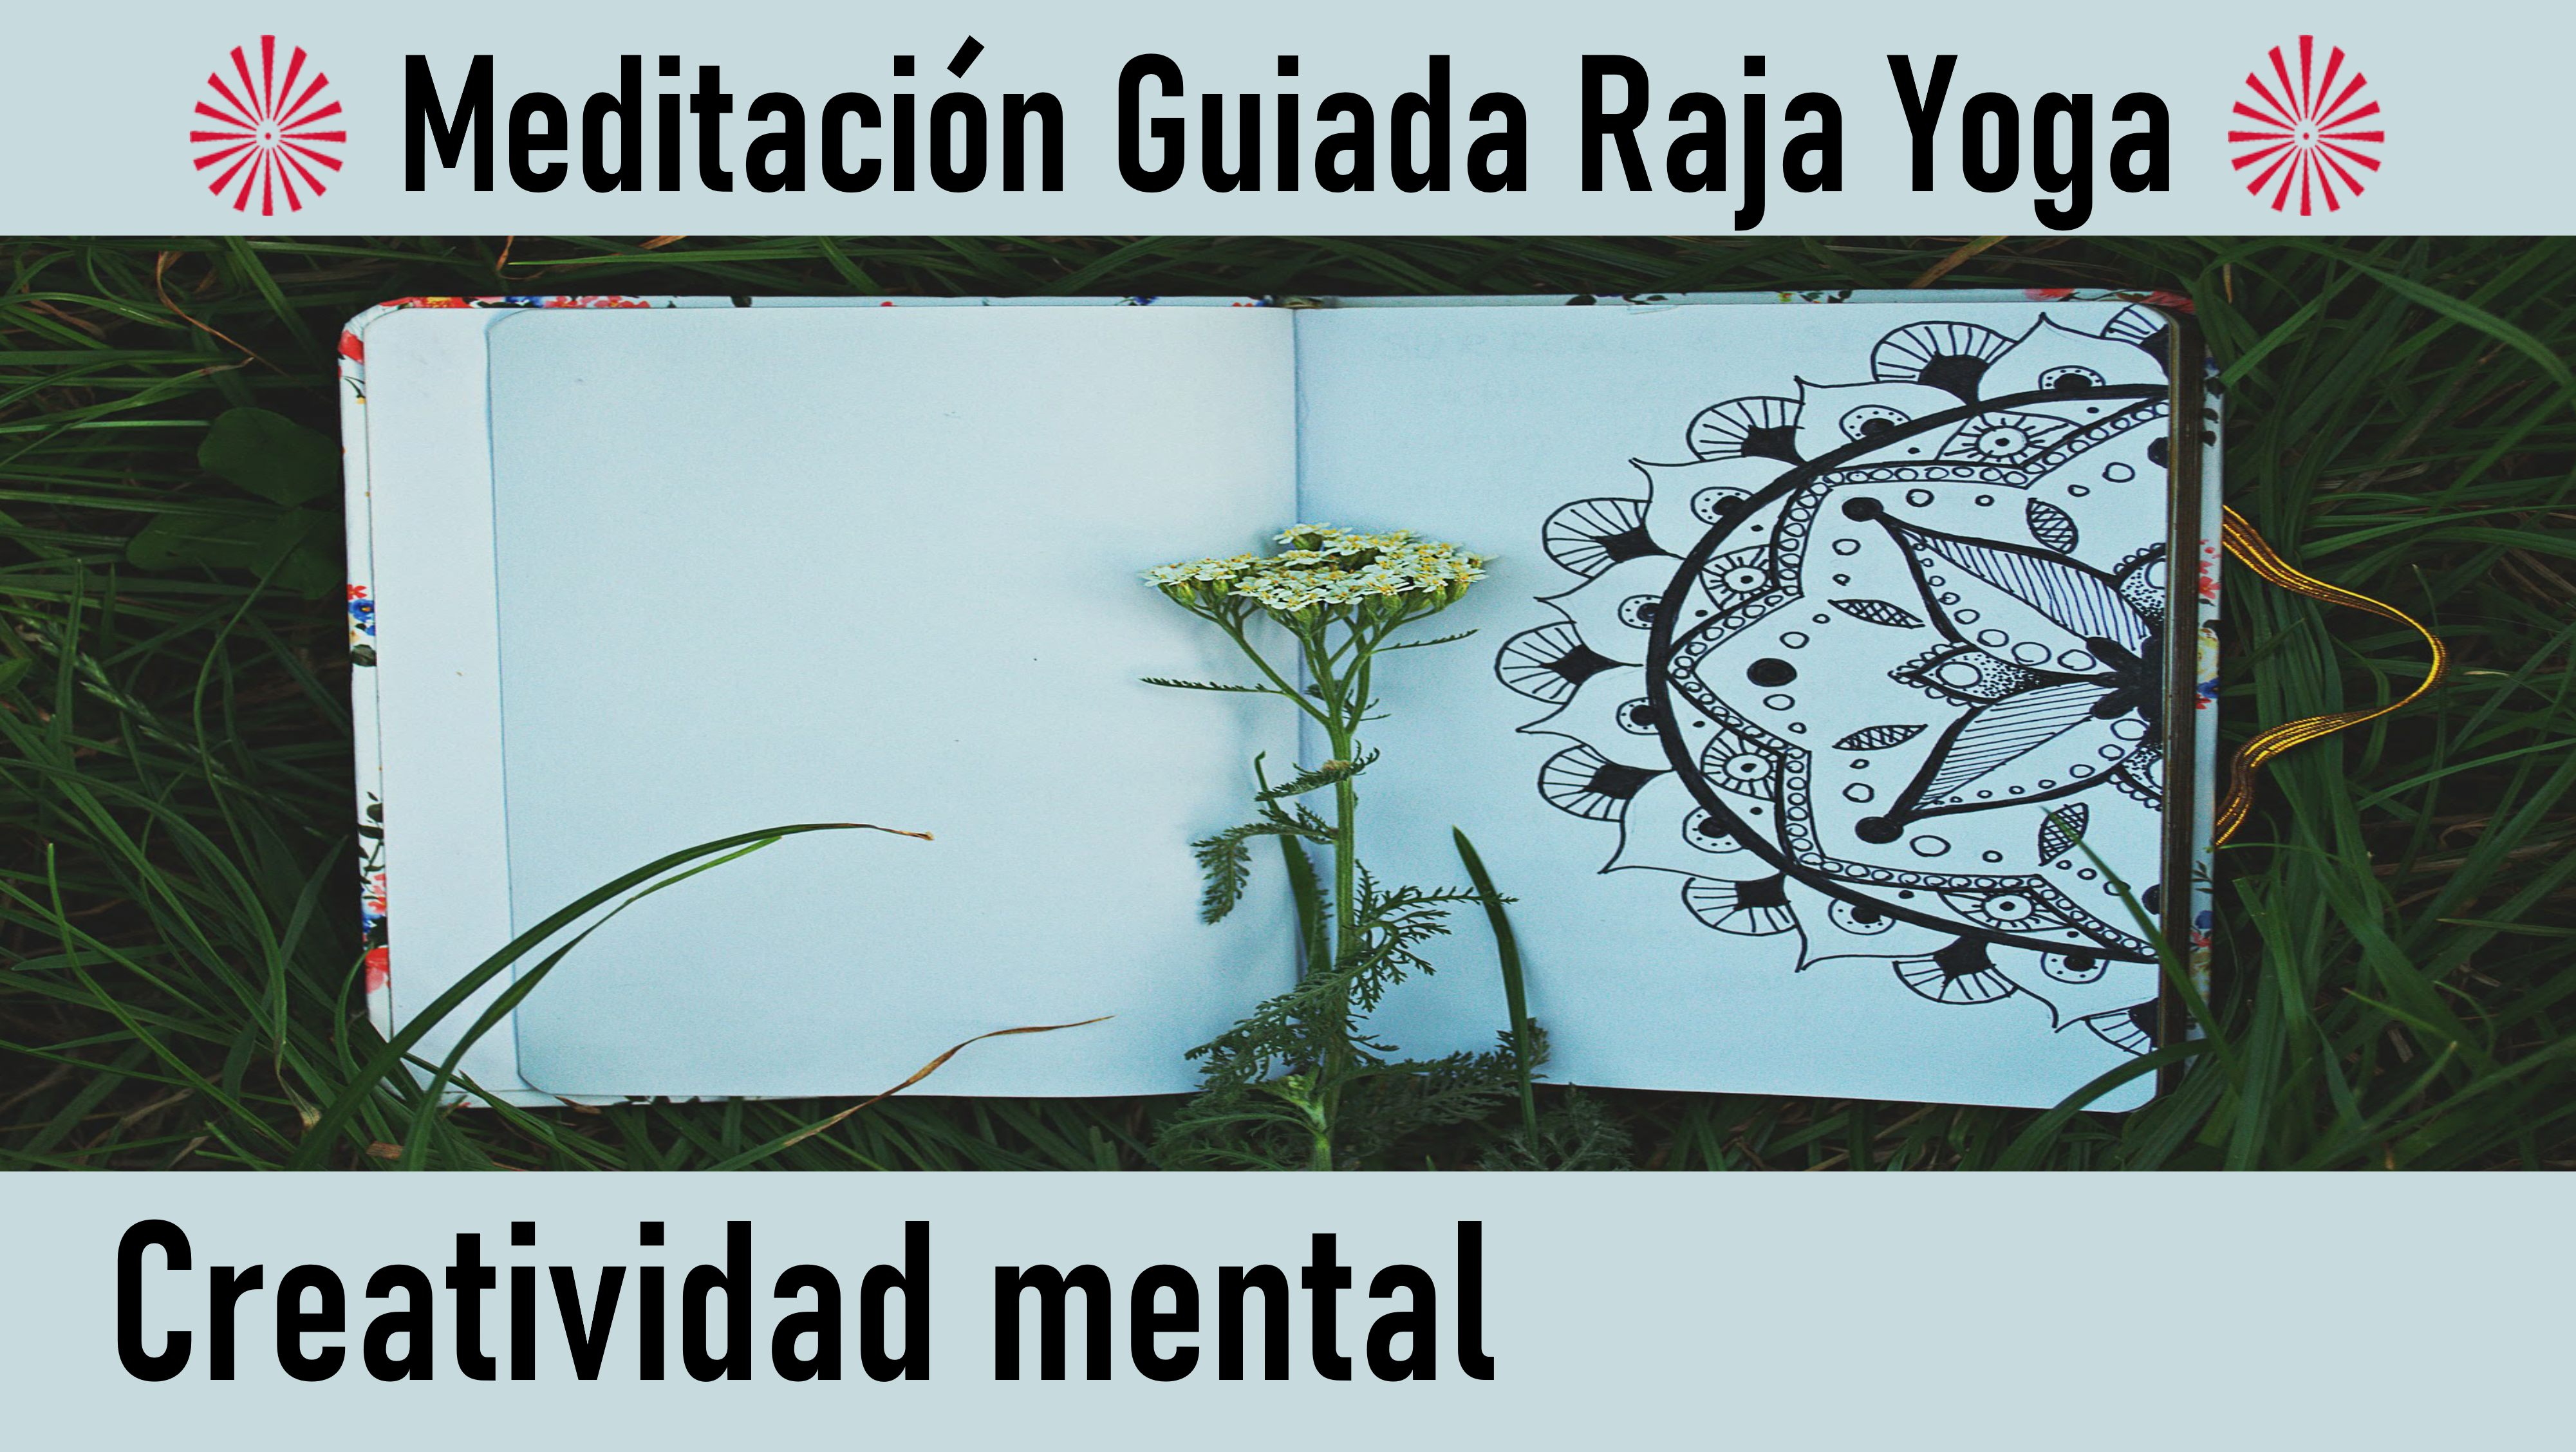 Meditación Raja Yoga: Creatividad mental (6 Agosto 2020) On-line desde Madrid